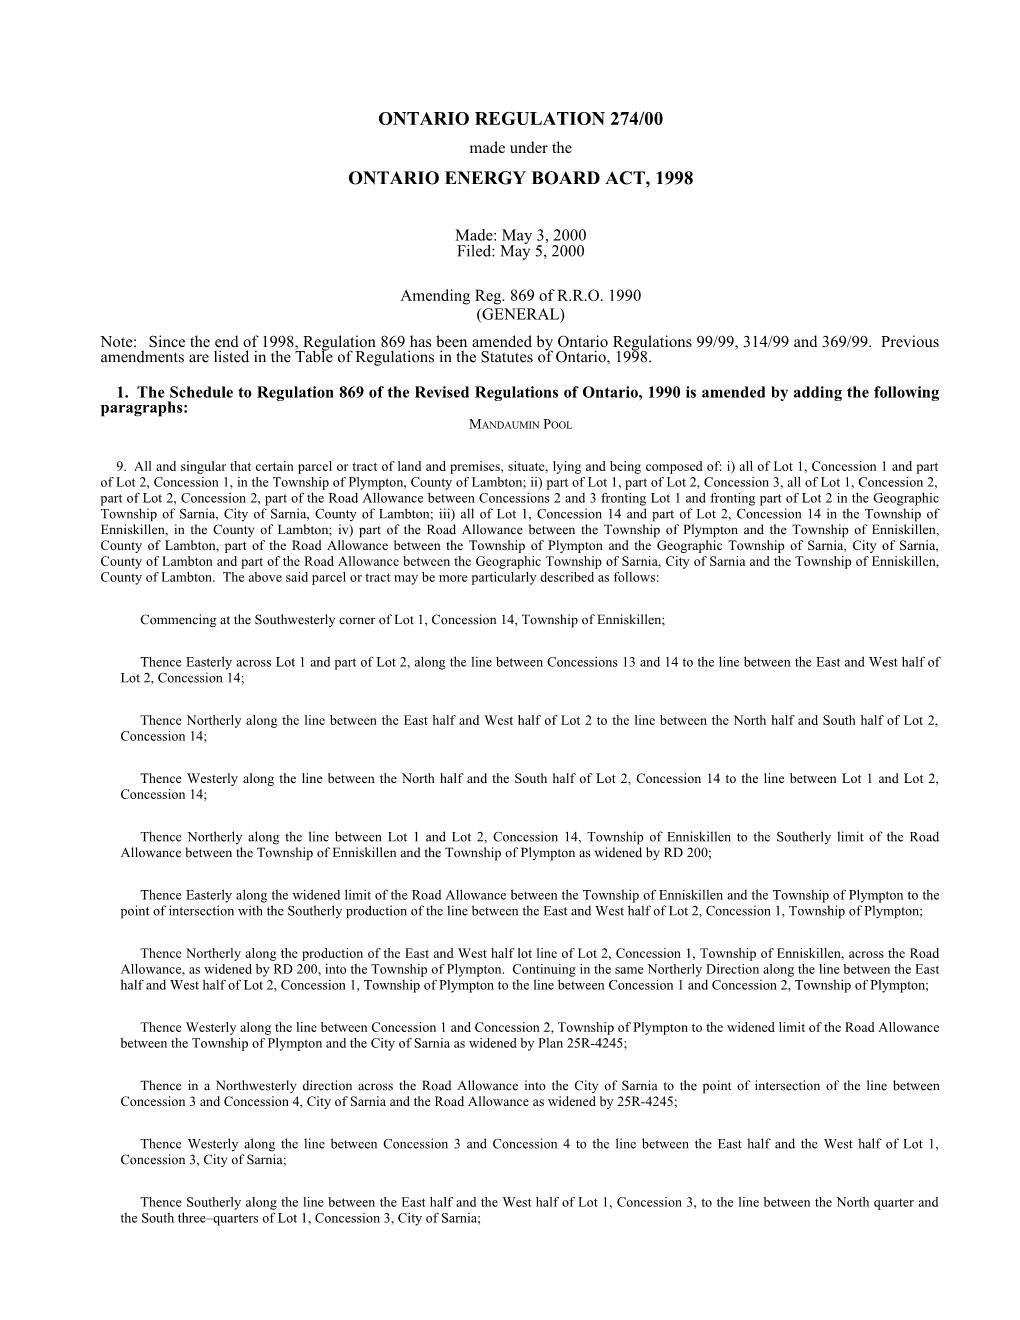 ONTARIO ENERGY BOARD ACT, 1998 - O. Reg. 274/00